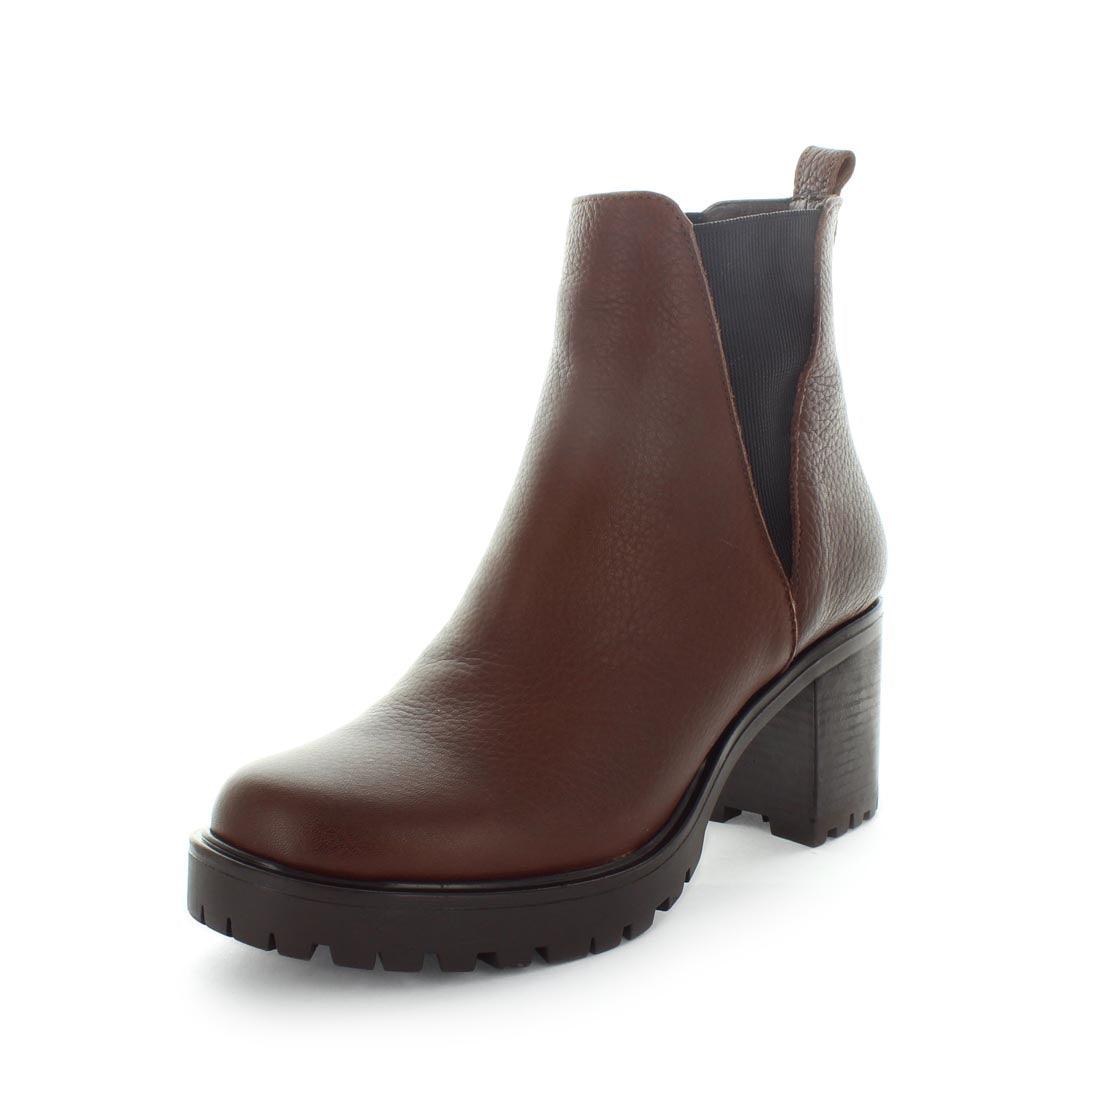 HADLY by ZOLA - iShoes - Sale, Sale: Women's Sale, Women's Shoes: Boots, Women's Shoes: European - FOOTWEAR-FOOTWEAR